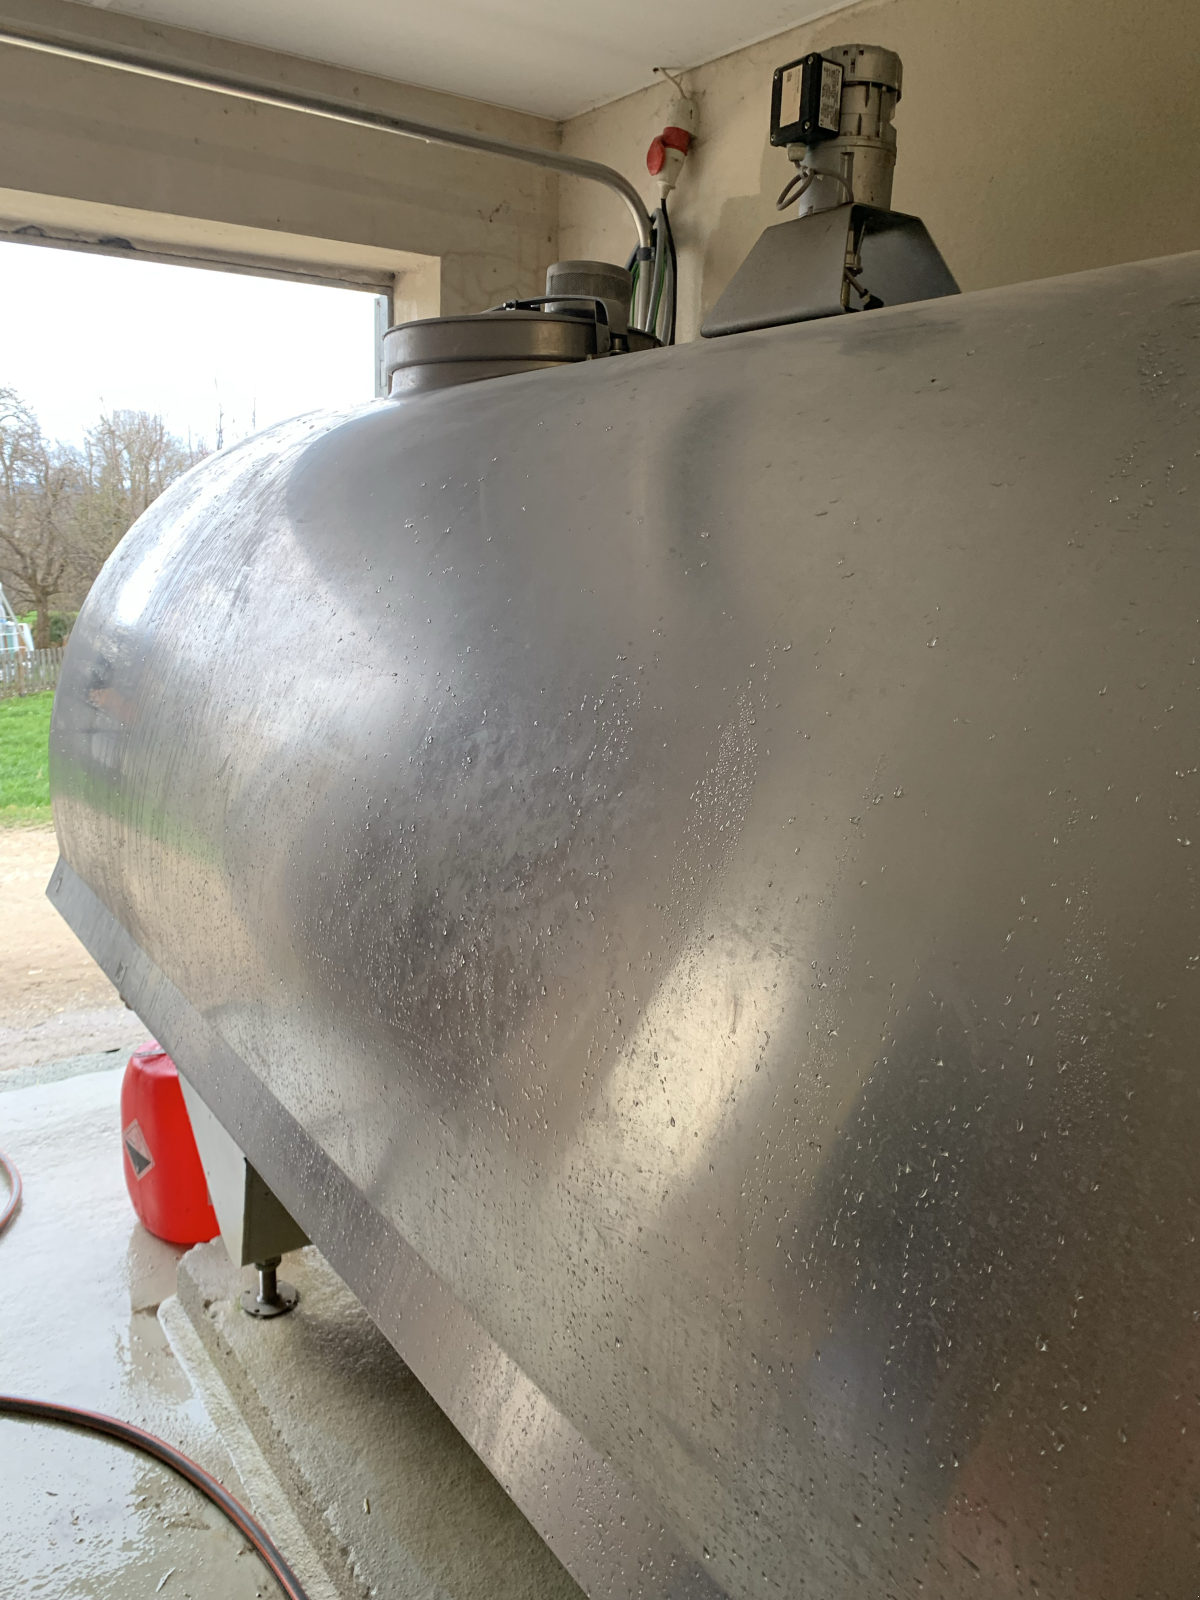 Milchkühltank des Typs GEA Milchkühlung, Gebrauchtmaschine in Bad Feilnbach (Bild 2)